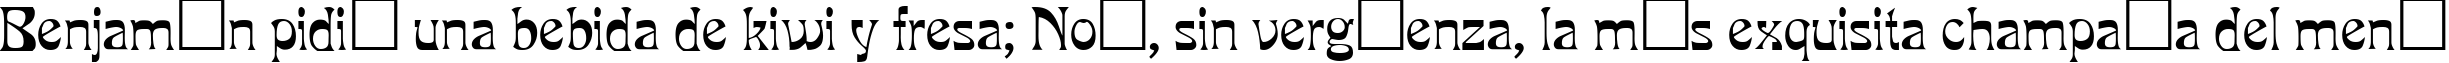 Пример написания шрифтом PCLook Regular текста на испанском